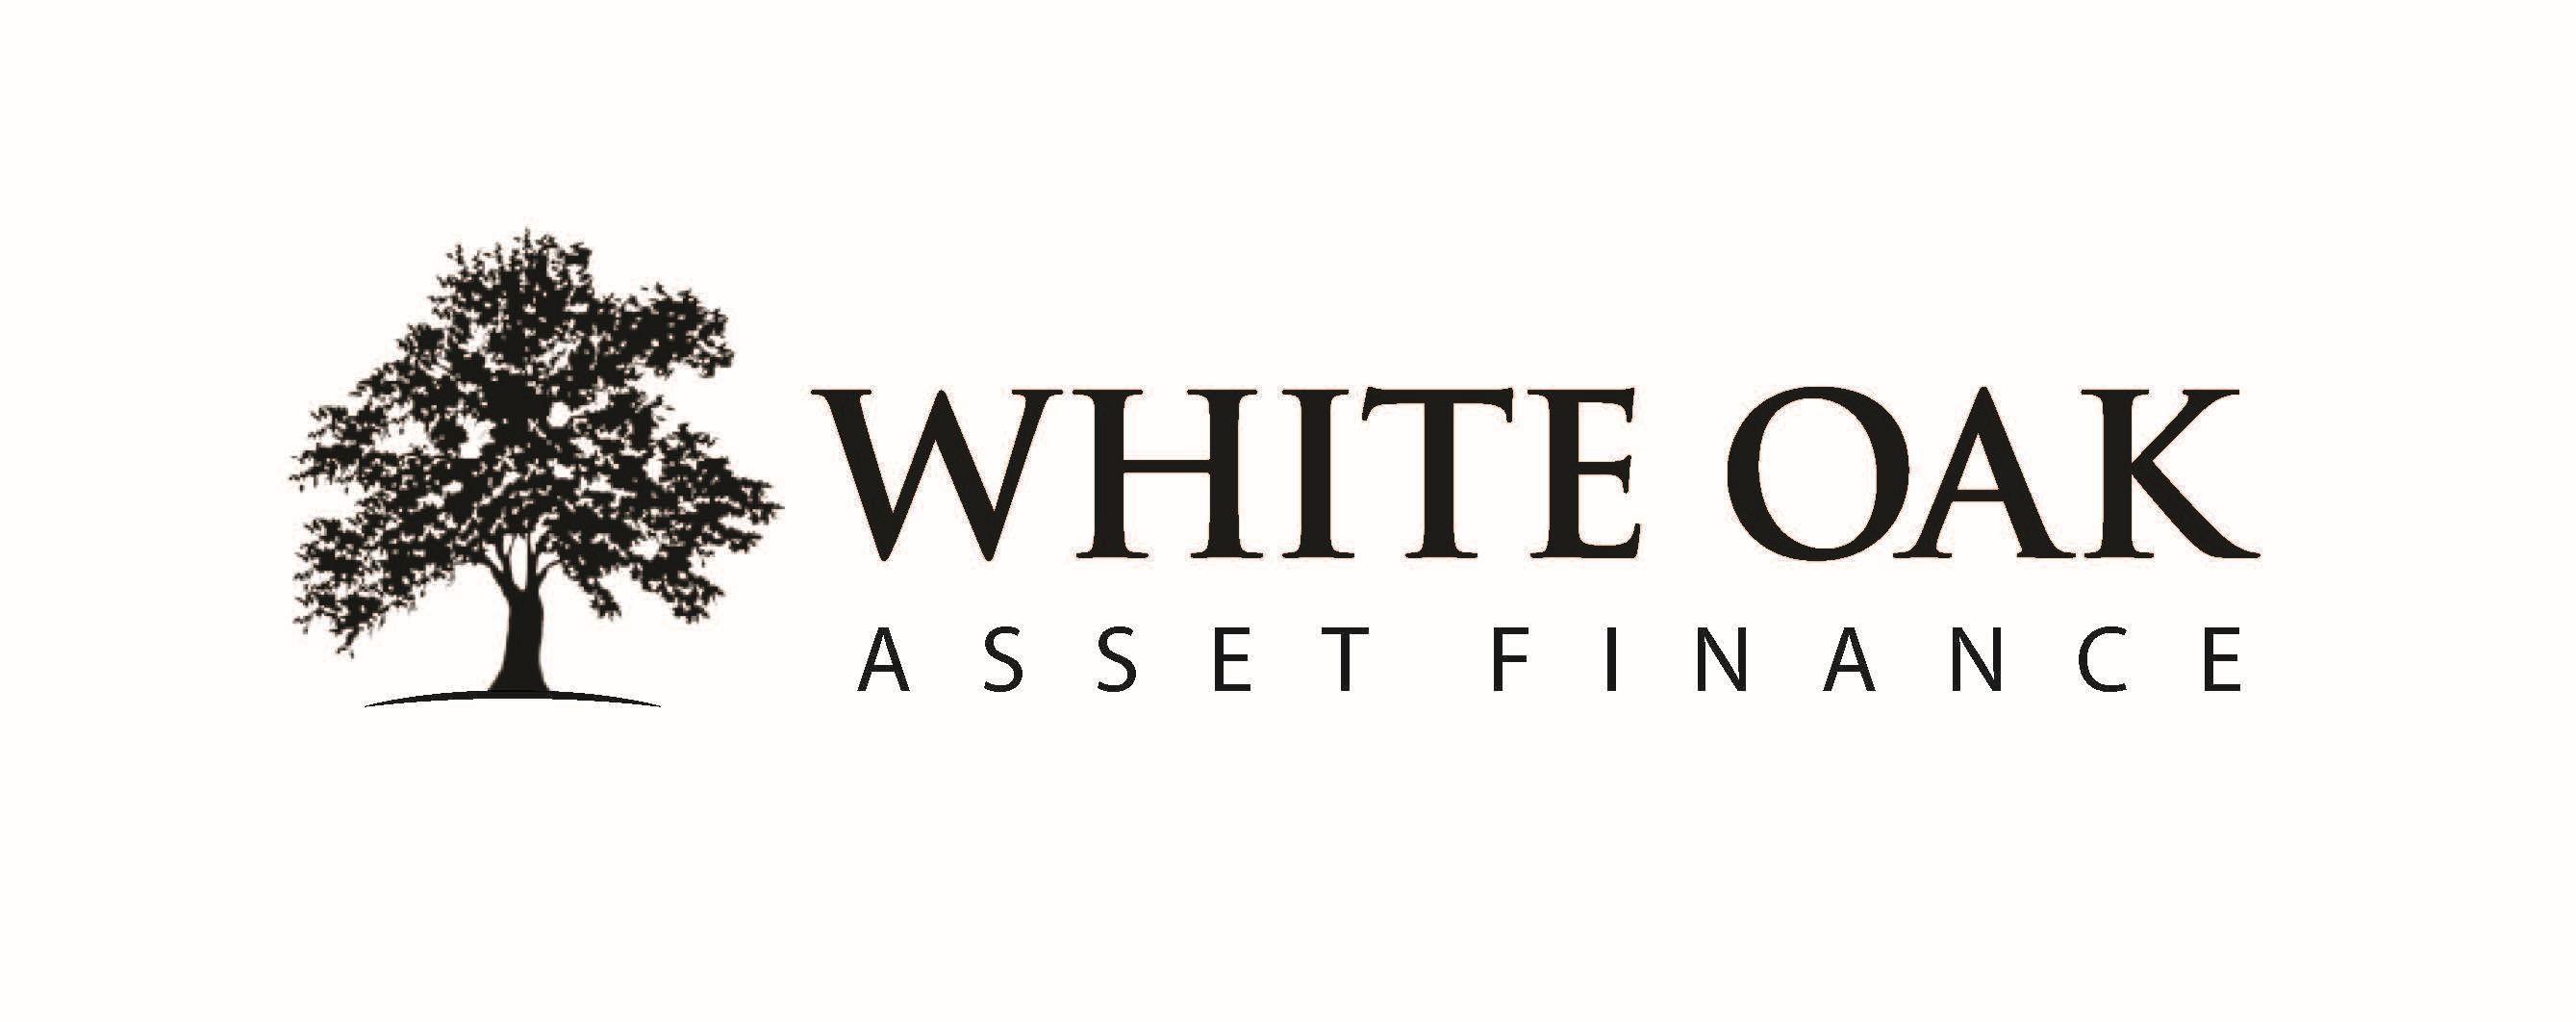 White Oak Asset Finance Commits £90 Million to British